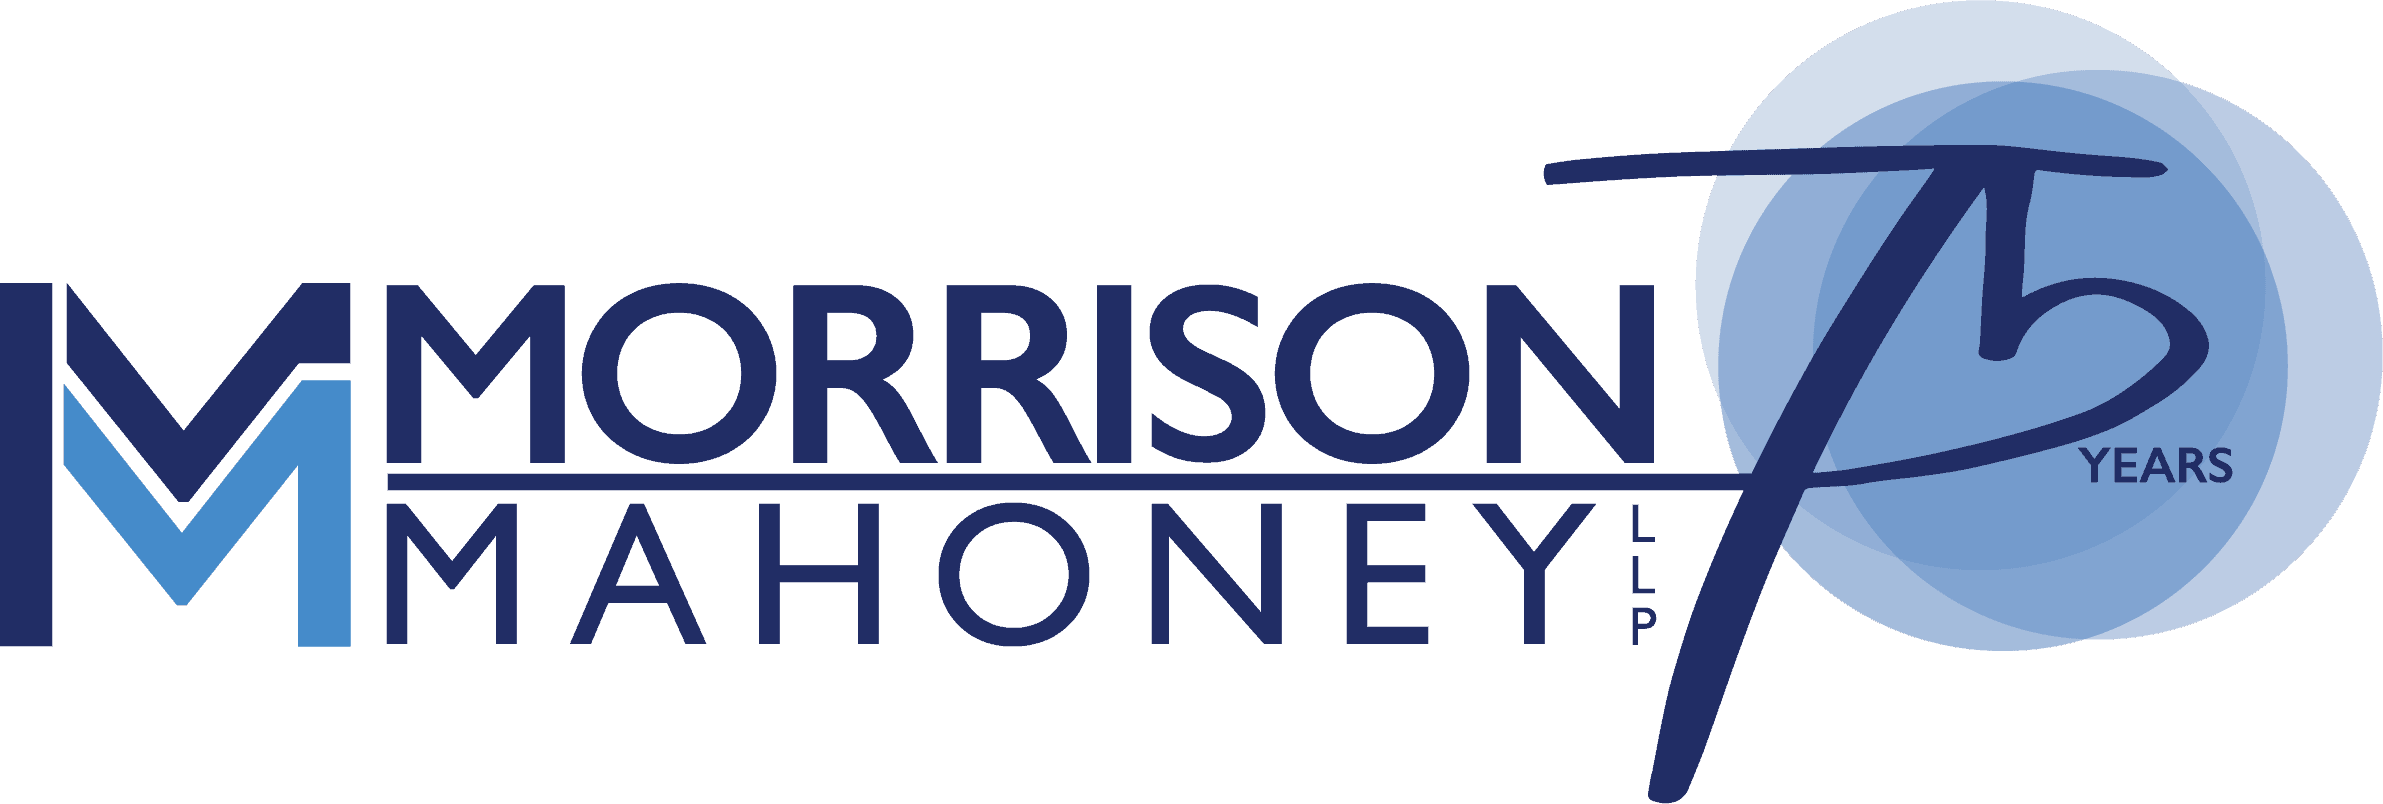 morrison mahoney logo